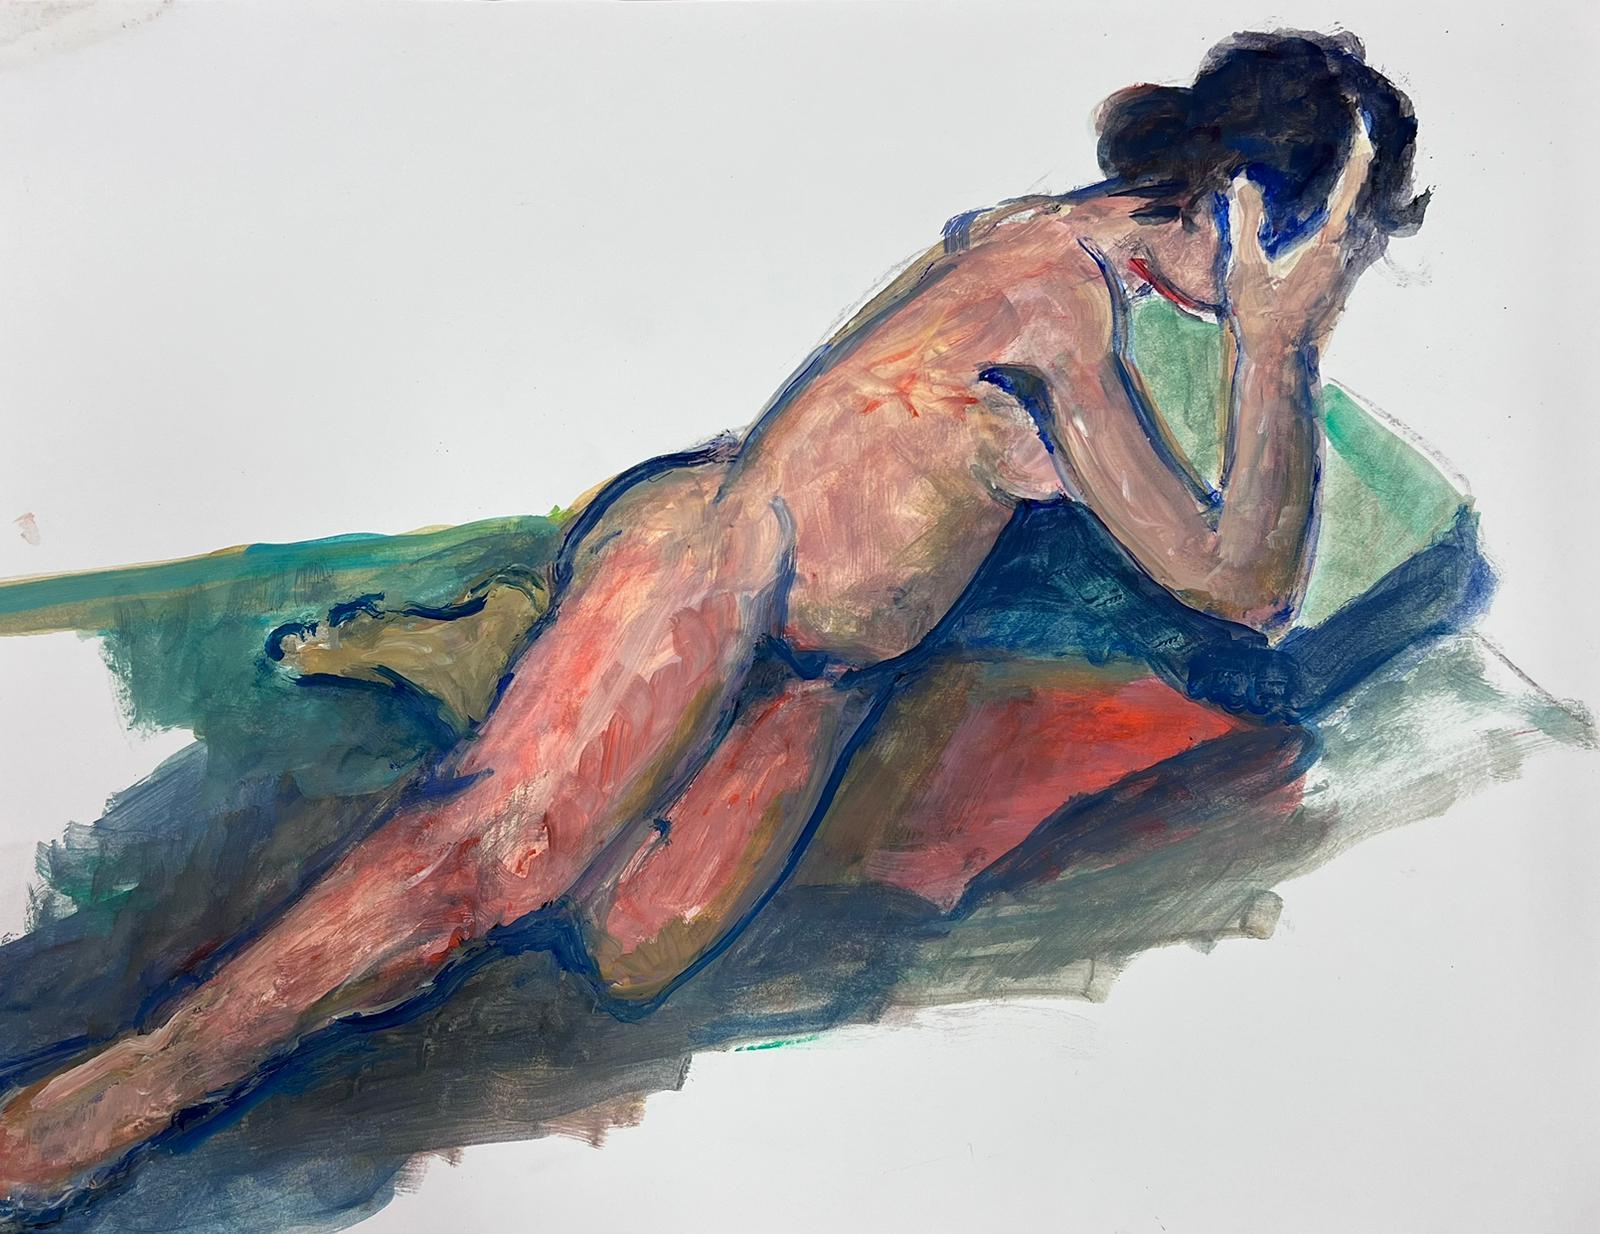 Nude Painting French Modernist - Peinture moderniste française d'une femme nue couchée des années 1970, collection Provence